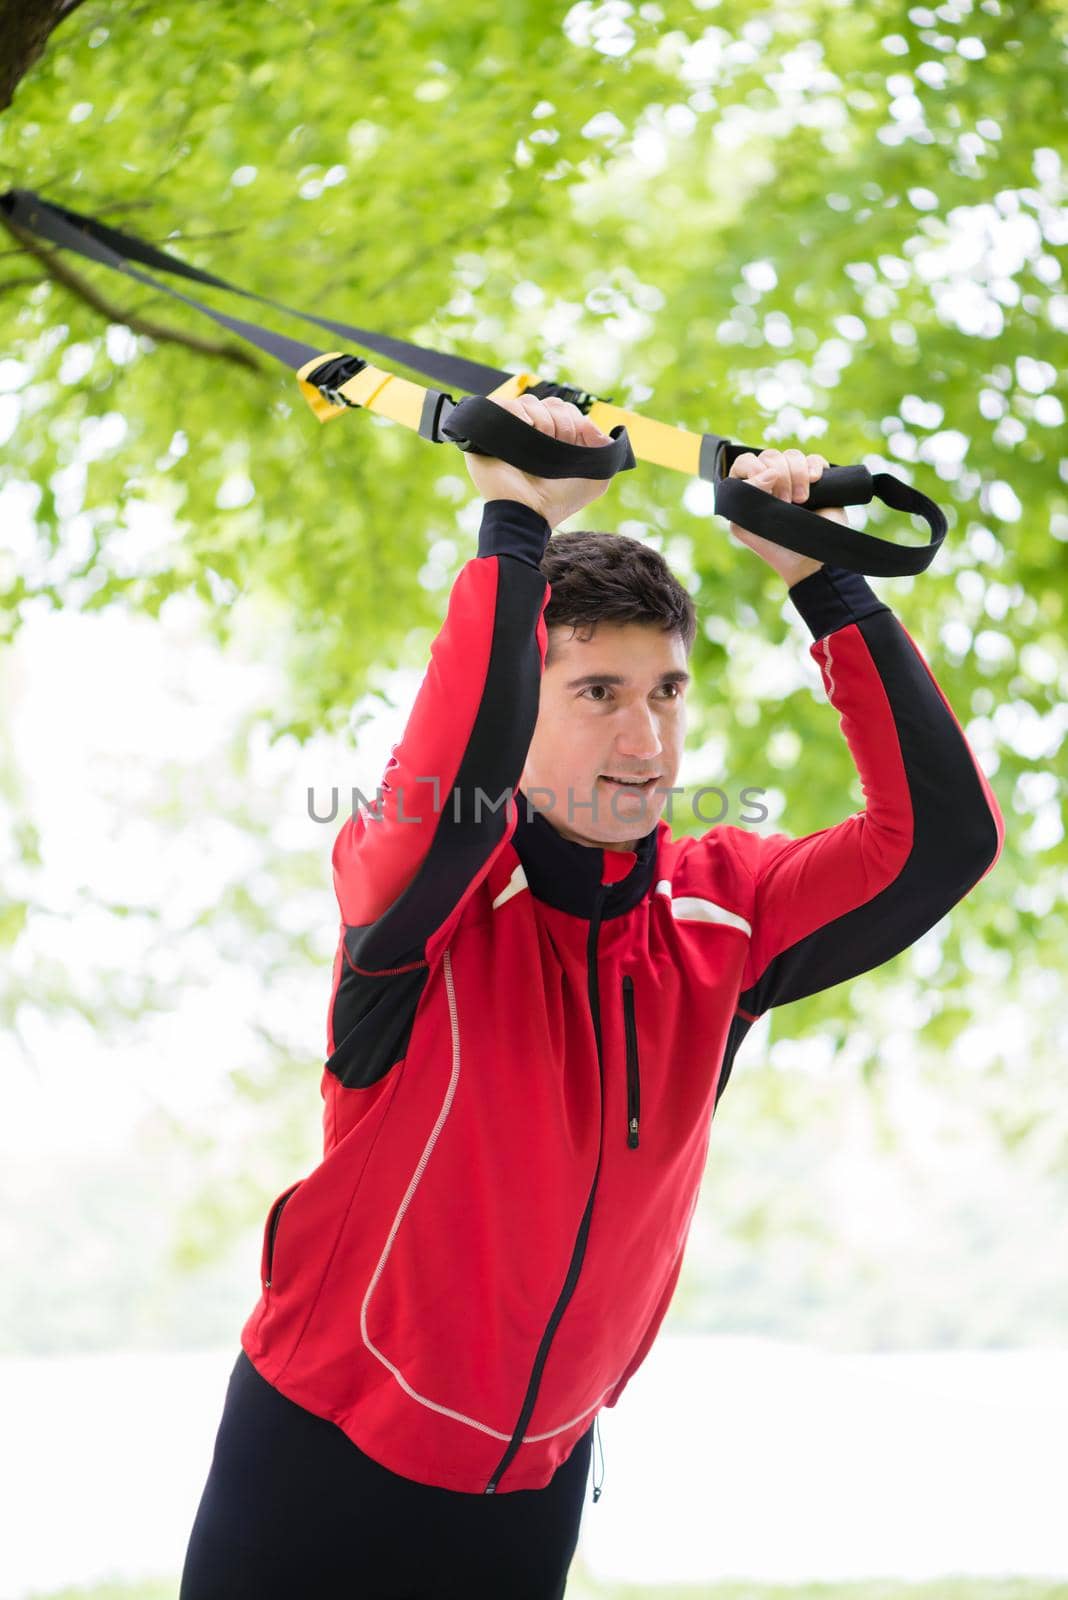 Man doing fitness sling training outdoors by Kzenon